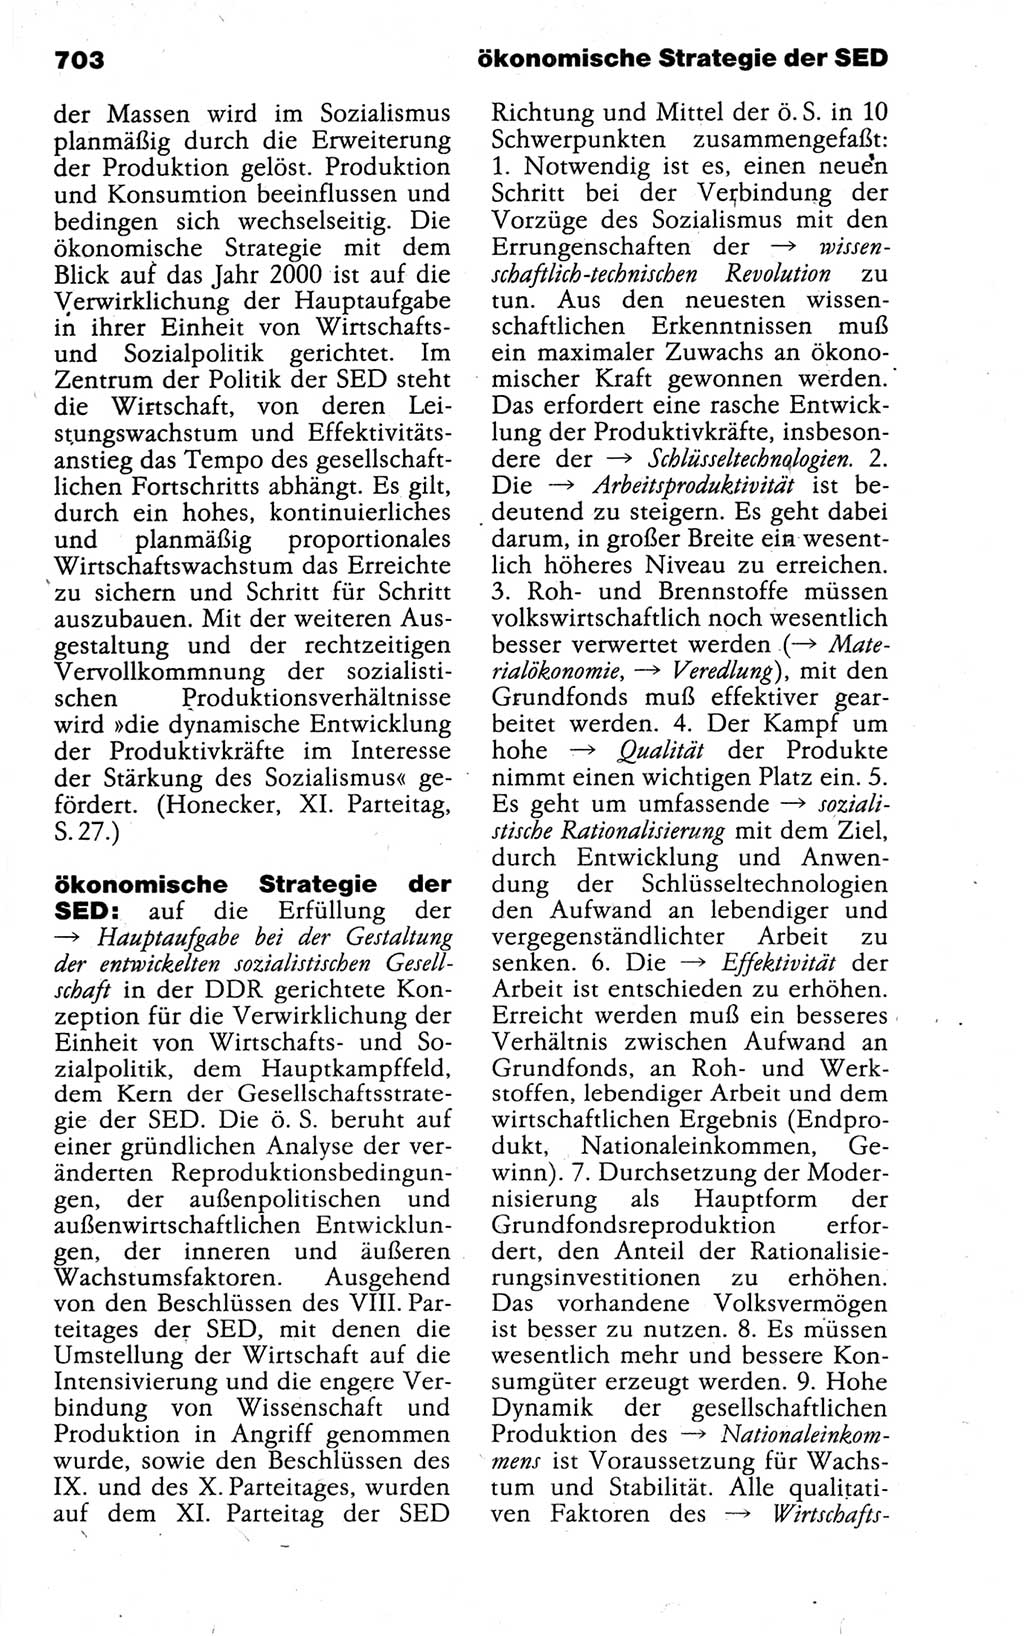 Kleines politisches Wörterbuch [Deutsche Demokratische Republik (DDR)] 1988, Seite 703 (Kl. pol. Wb. DDR 1988, S. 703)